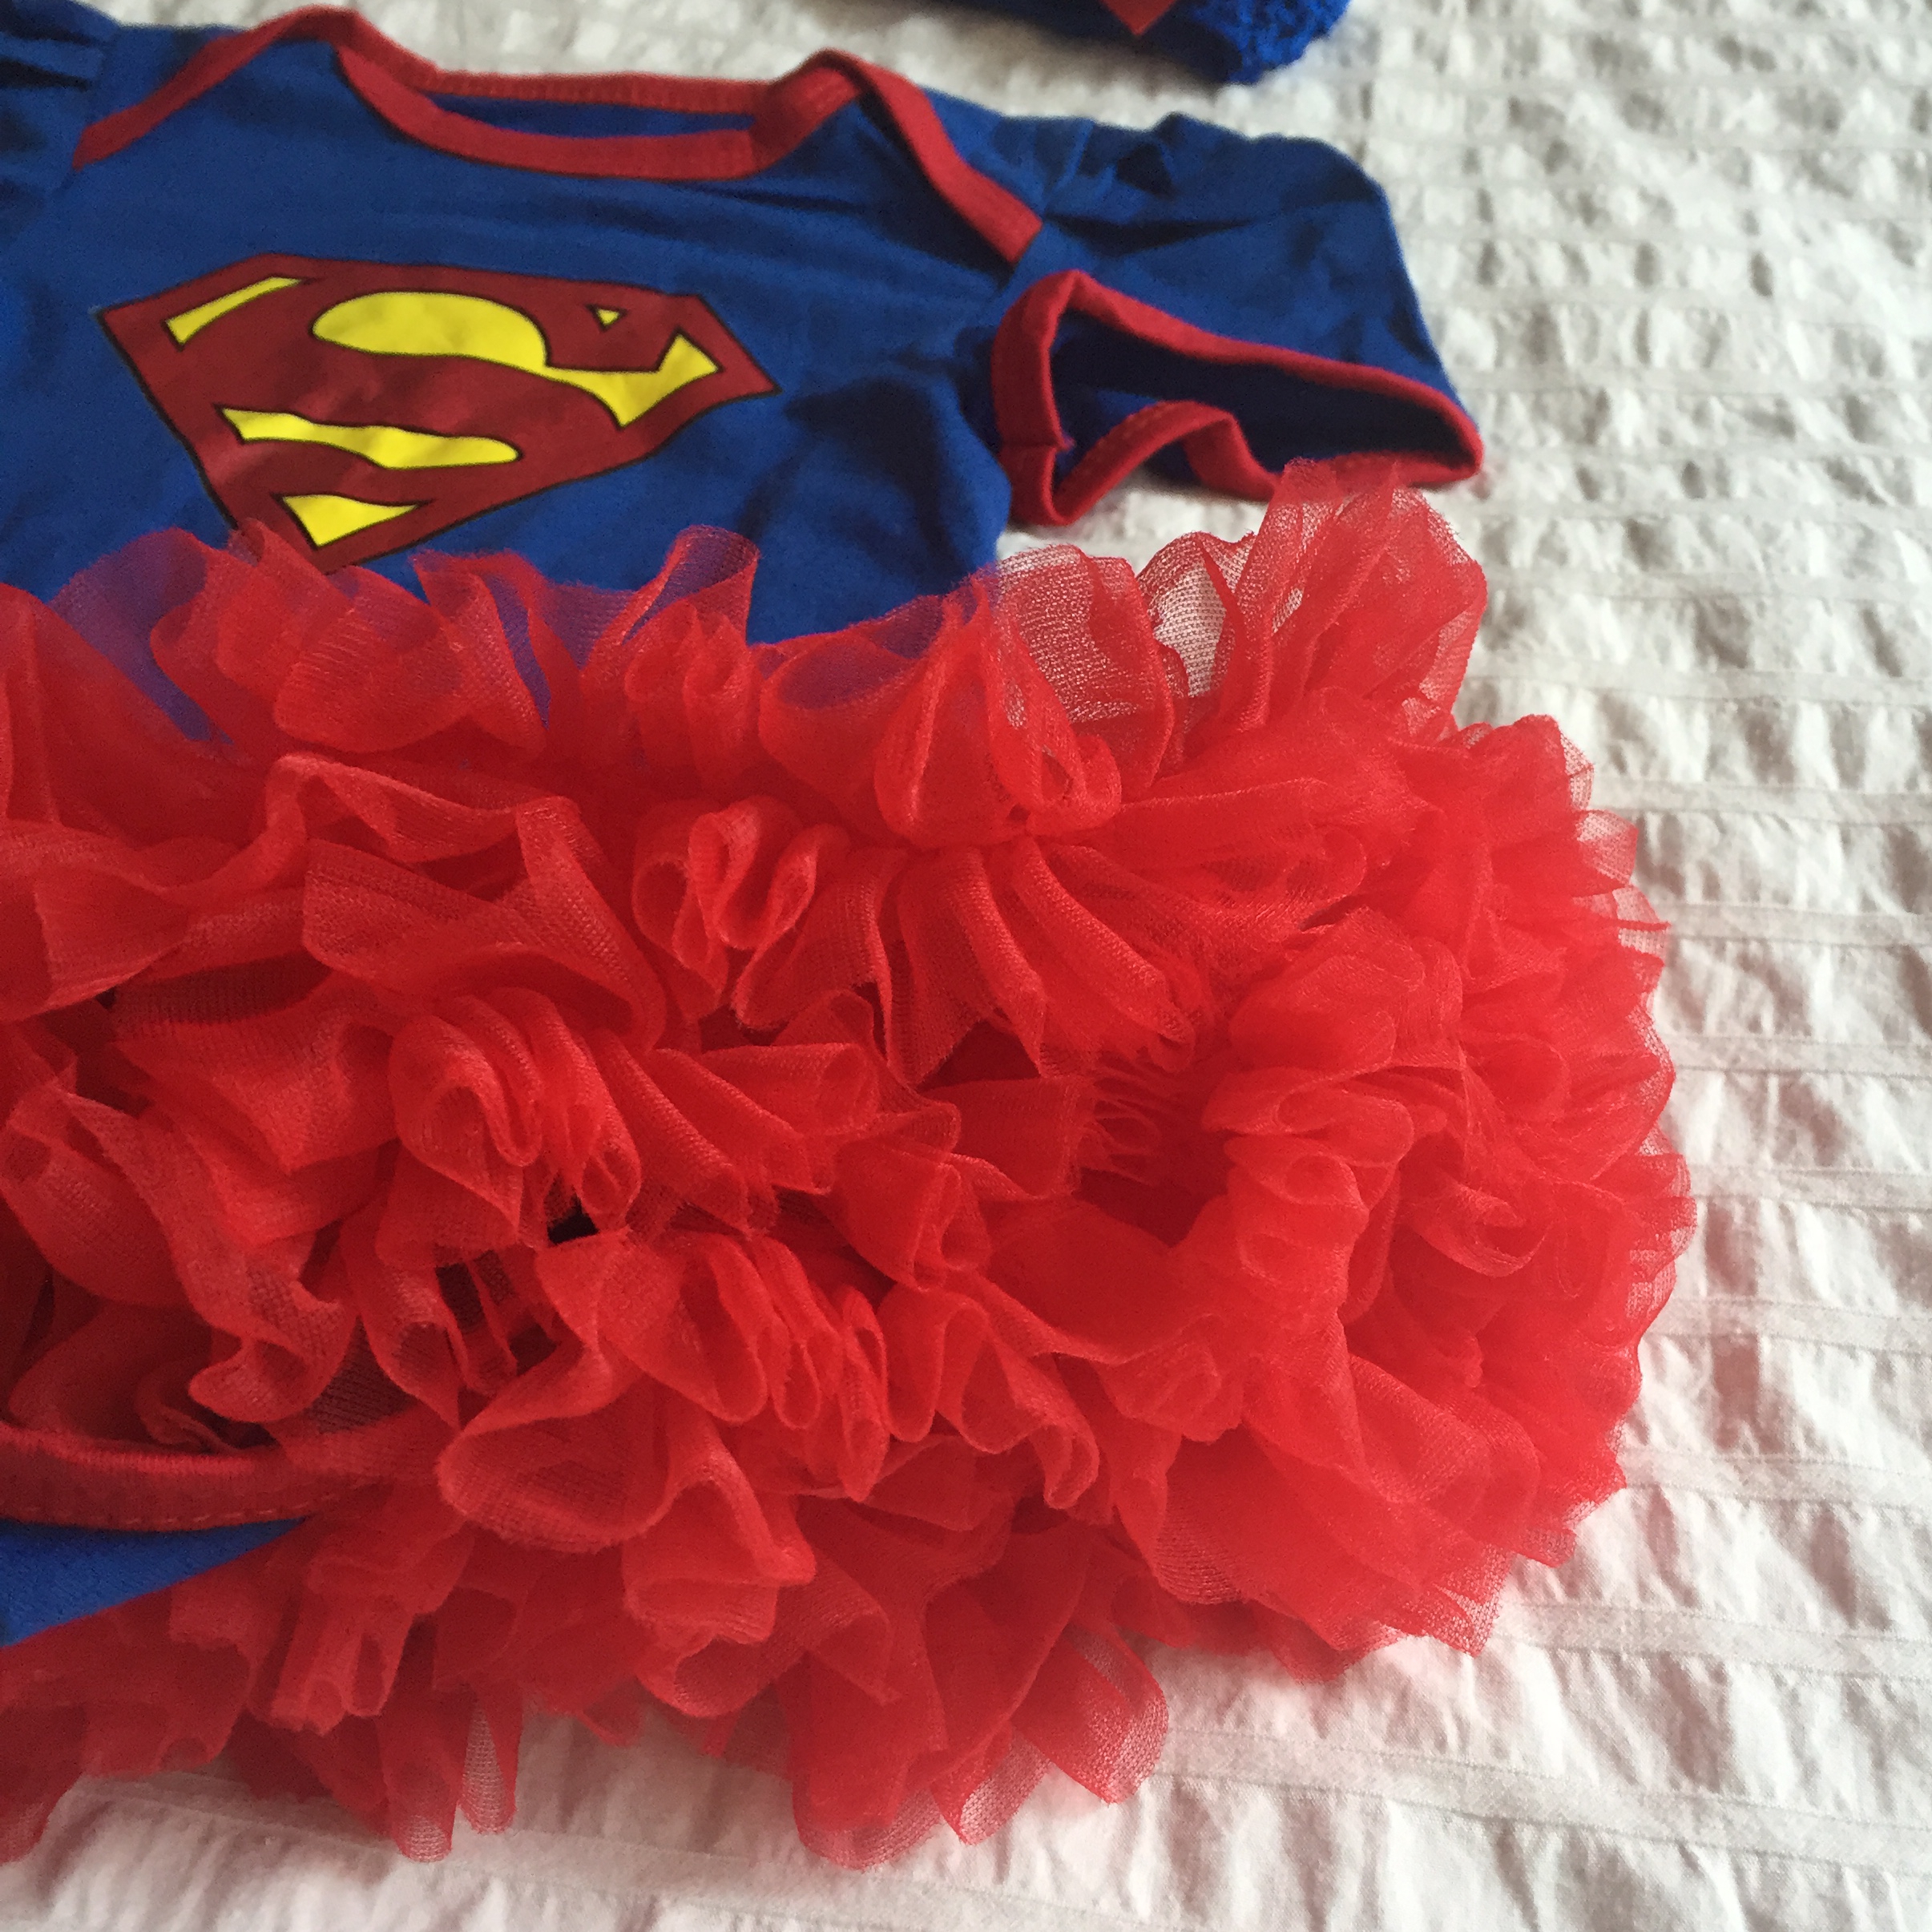 日安朵朵 女嬰精緻雪紡蓬蓬裙連身衣 女超人 Superwoman (短袖款) (0-6個月)